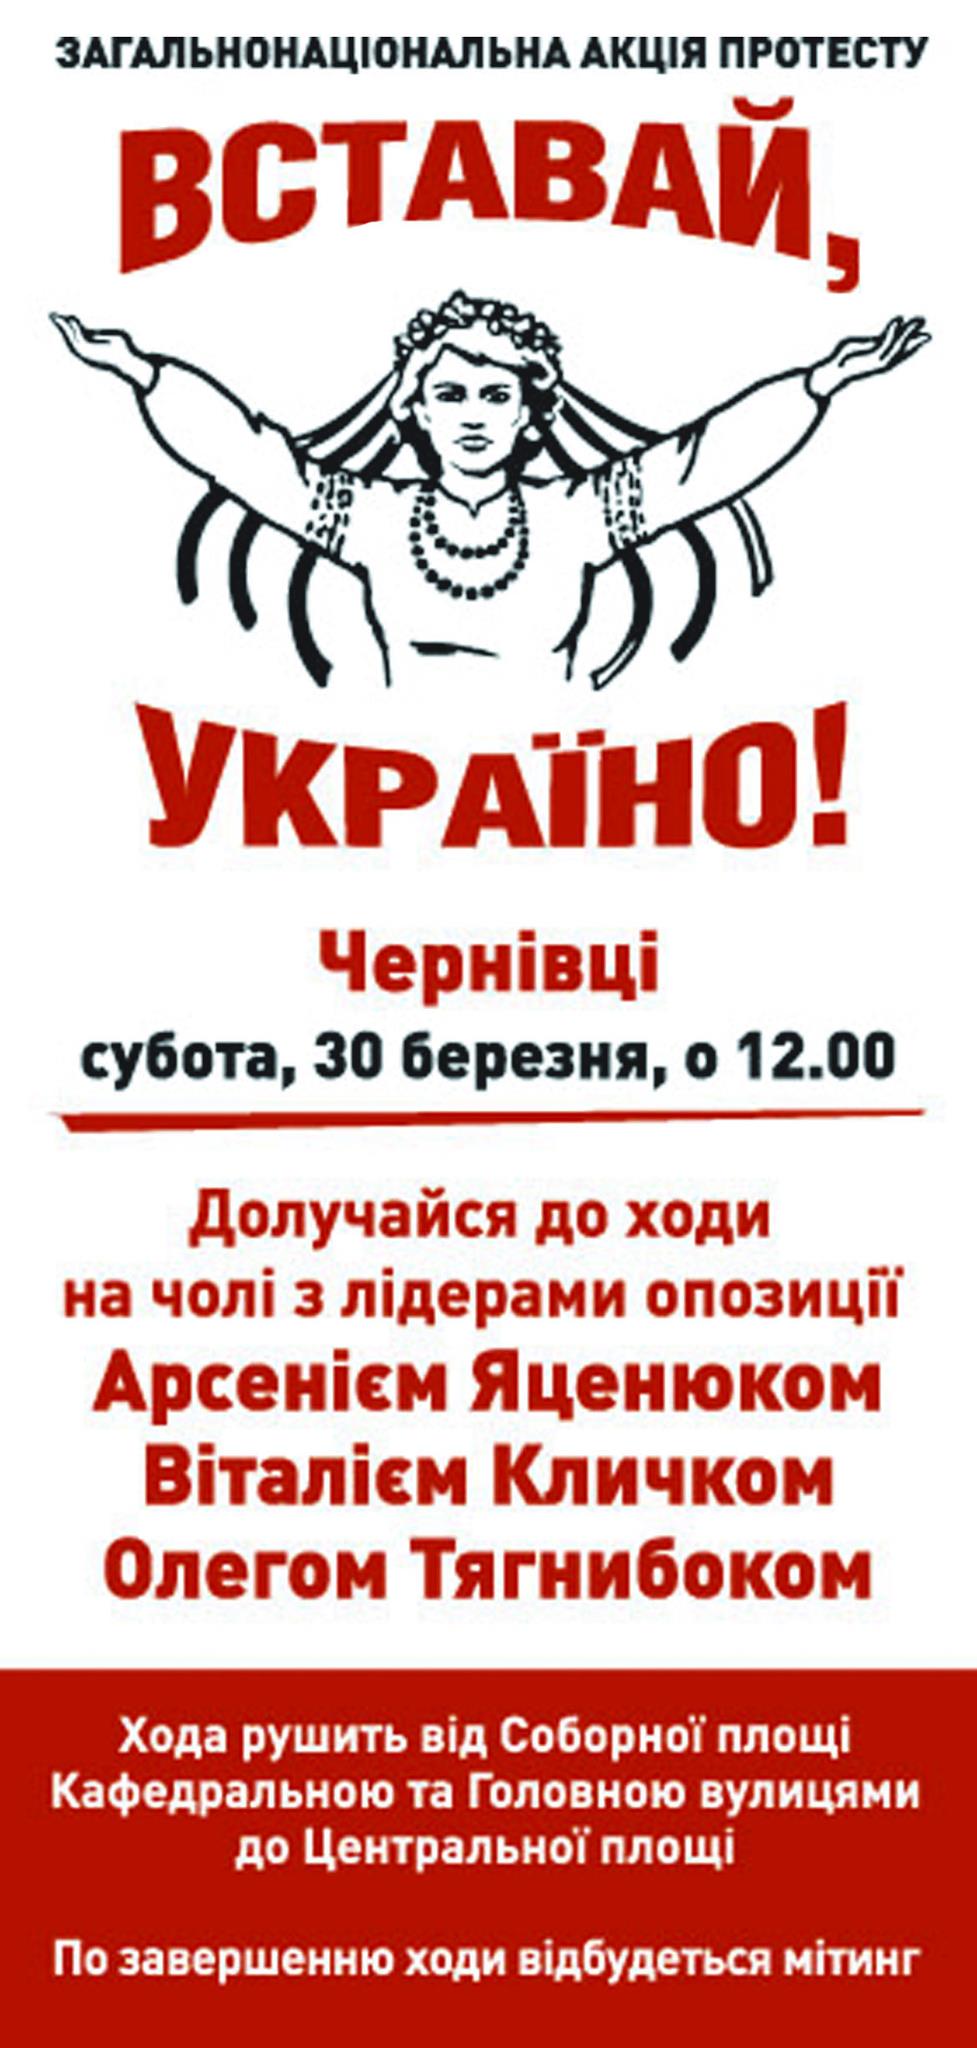 В Чернівцях 30 березня відбудеться акція протесту "Вставай, Україно!"